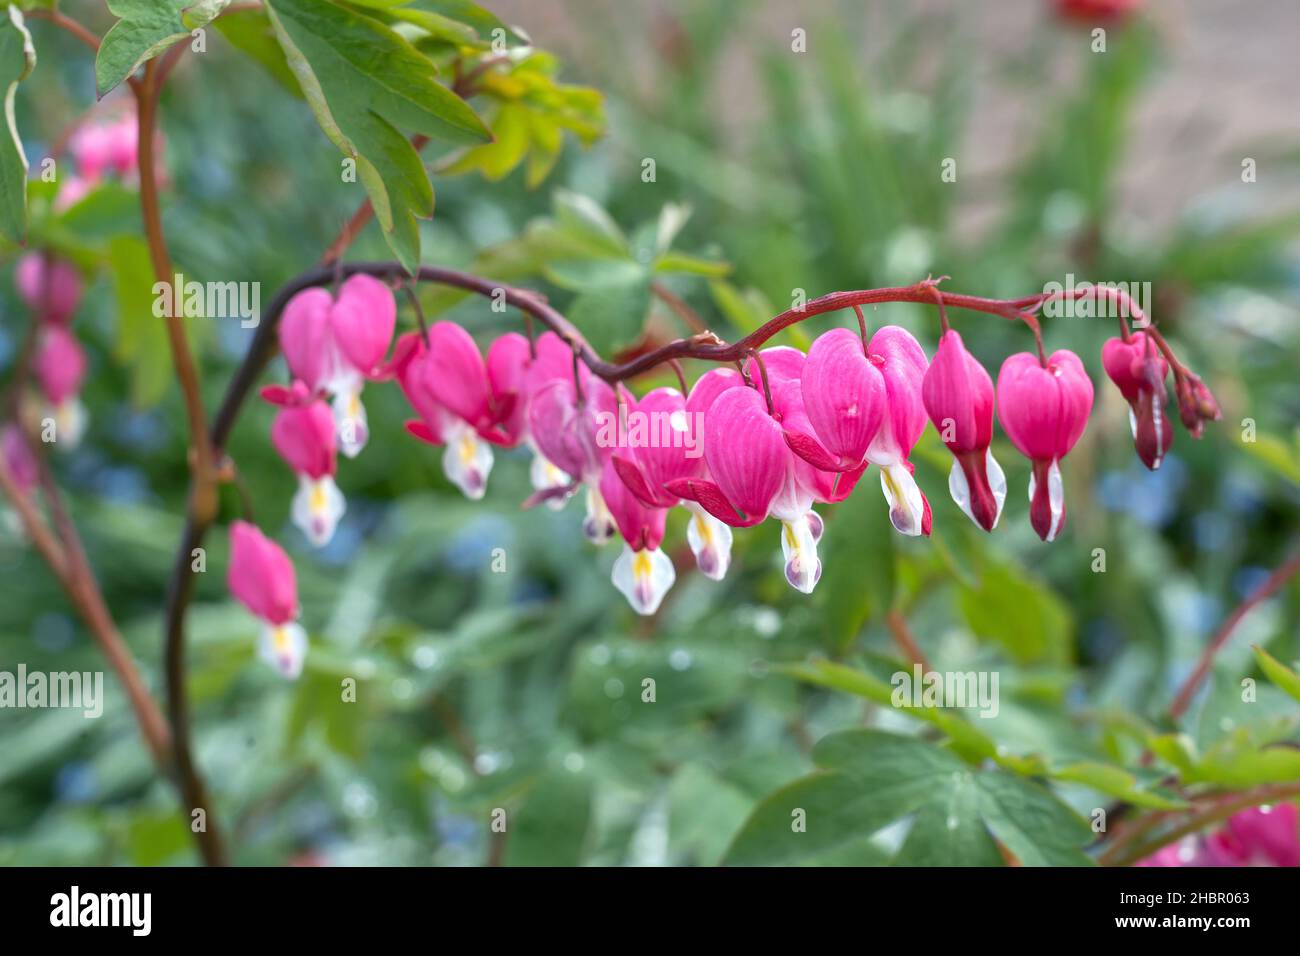 Gartenblume Tränendes Herz Lamprocapnos spectabilis Stock Photo